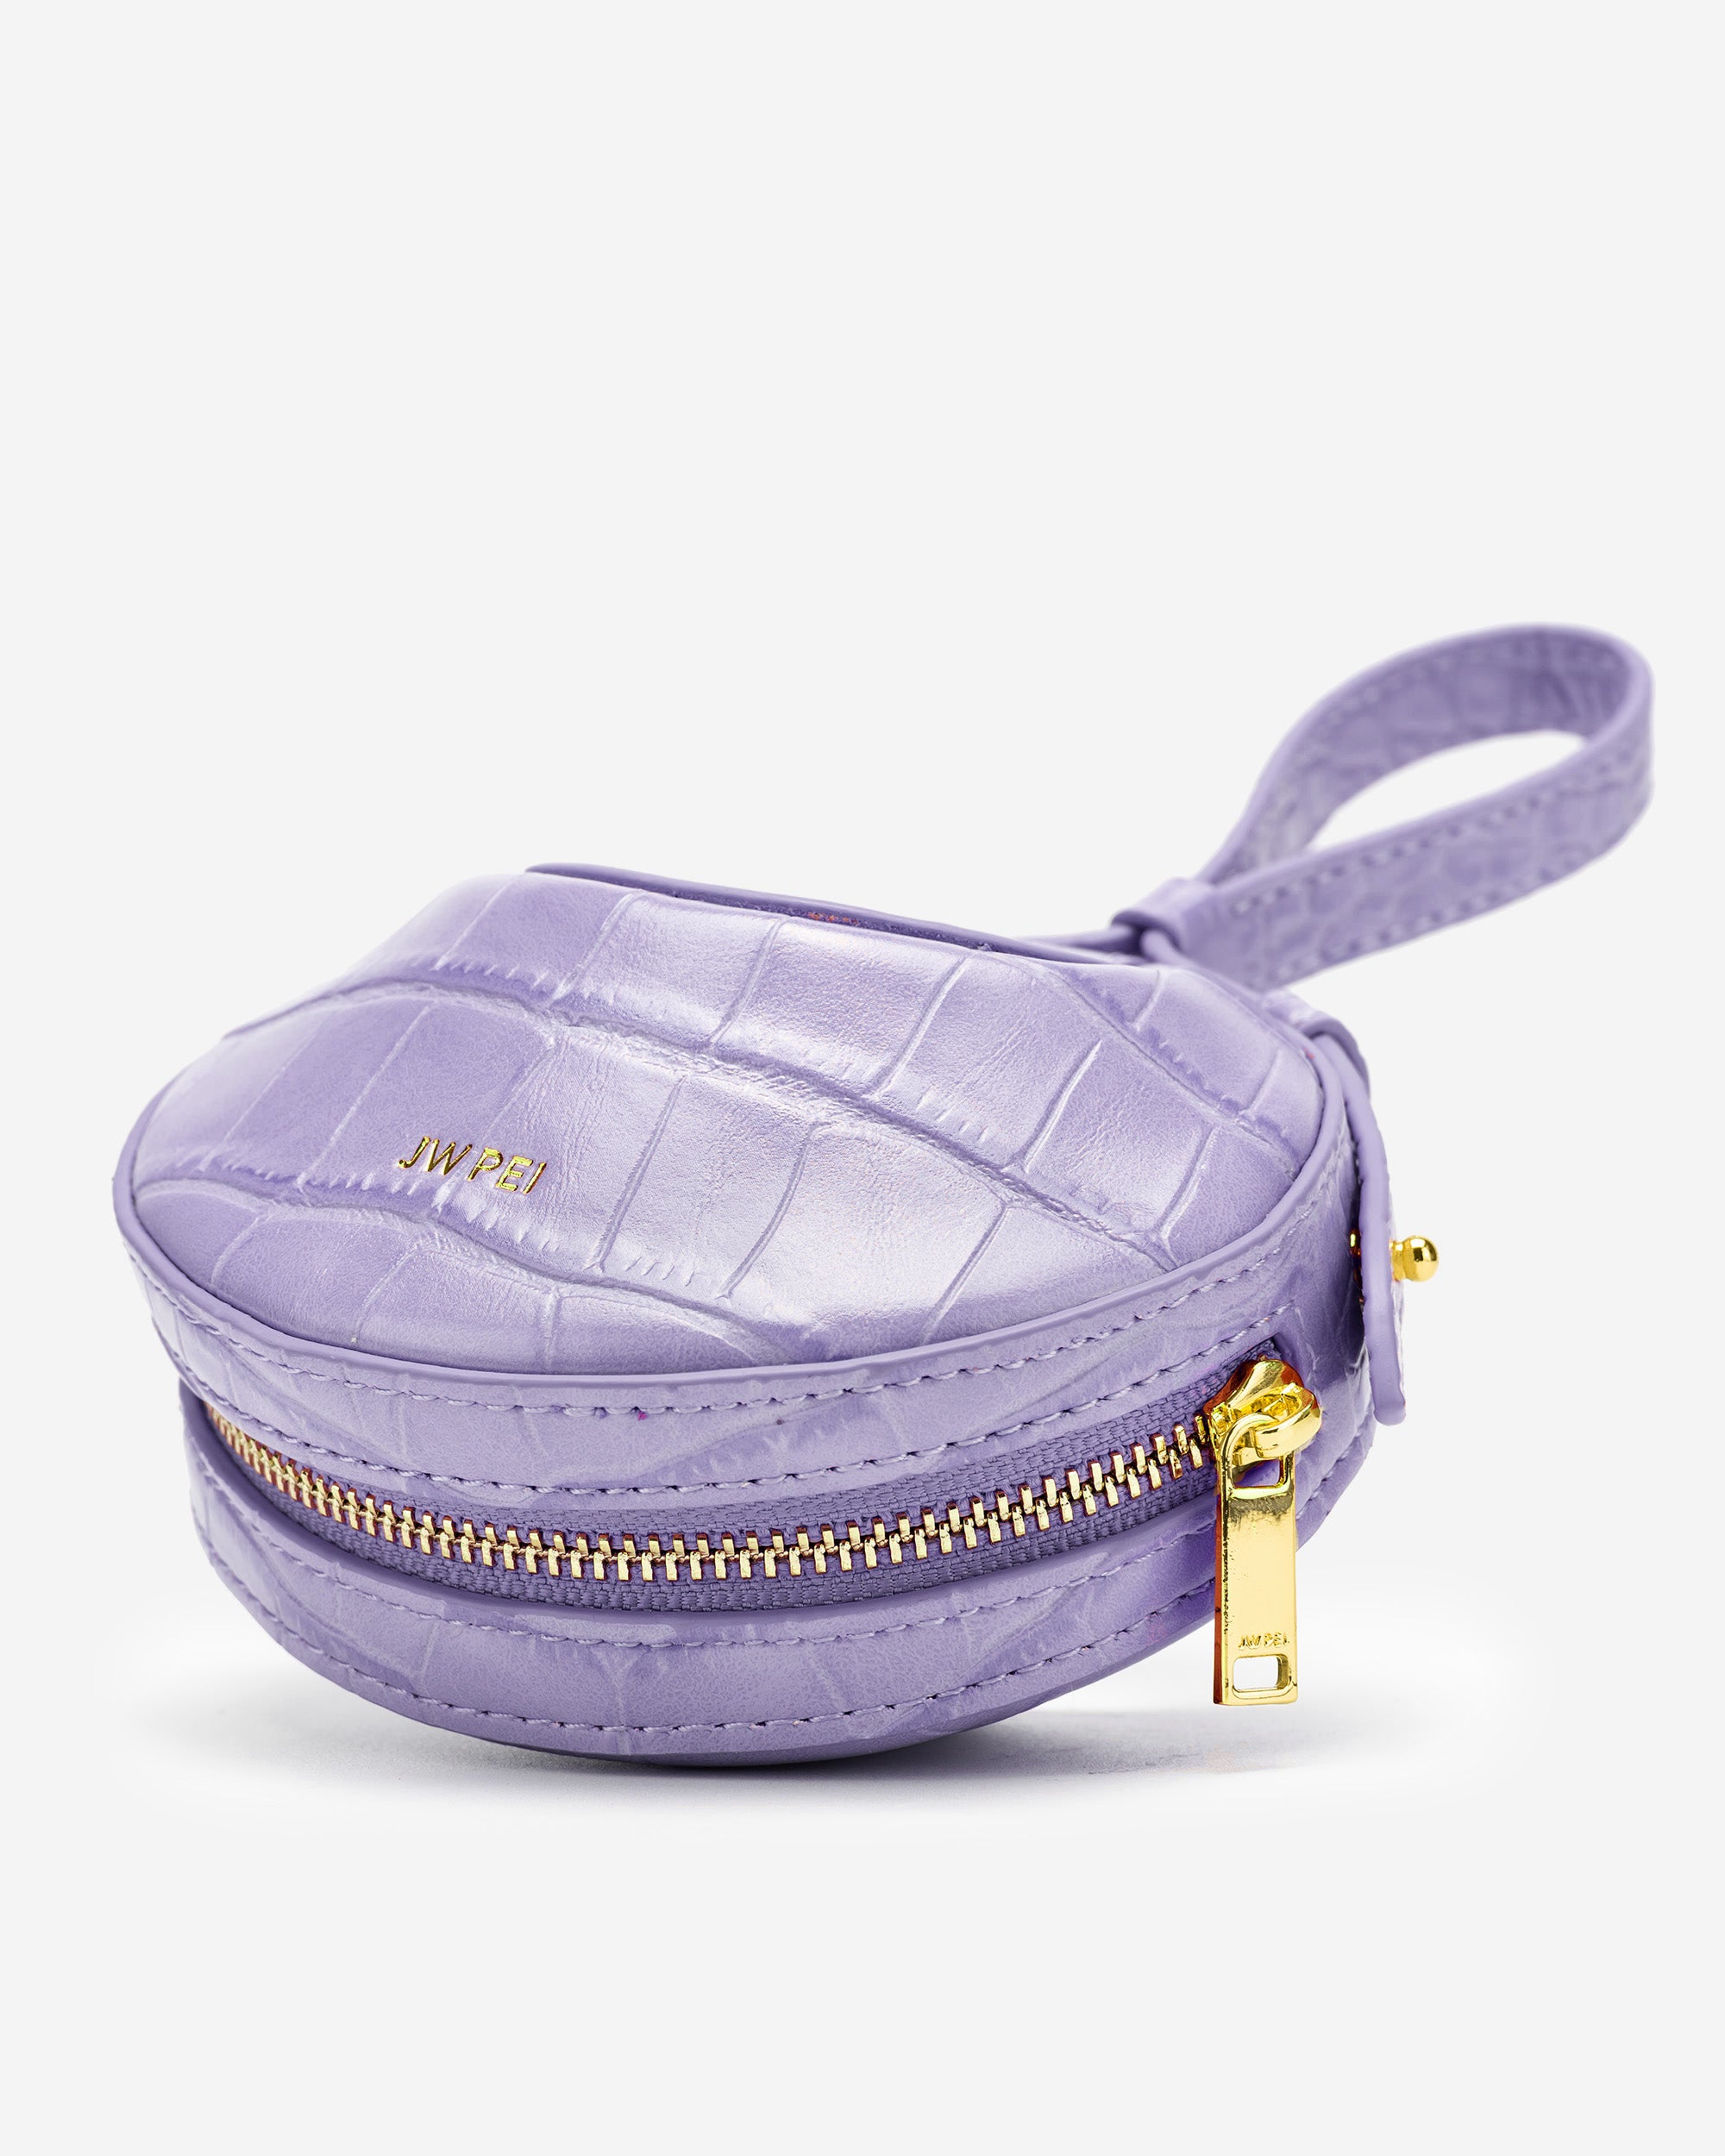 Rantan 超迷你手提包 - 紫色鱷魚紋